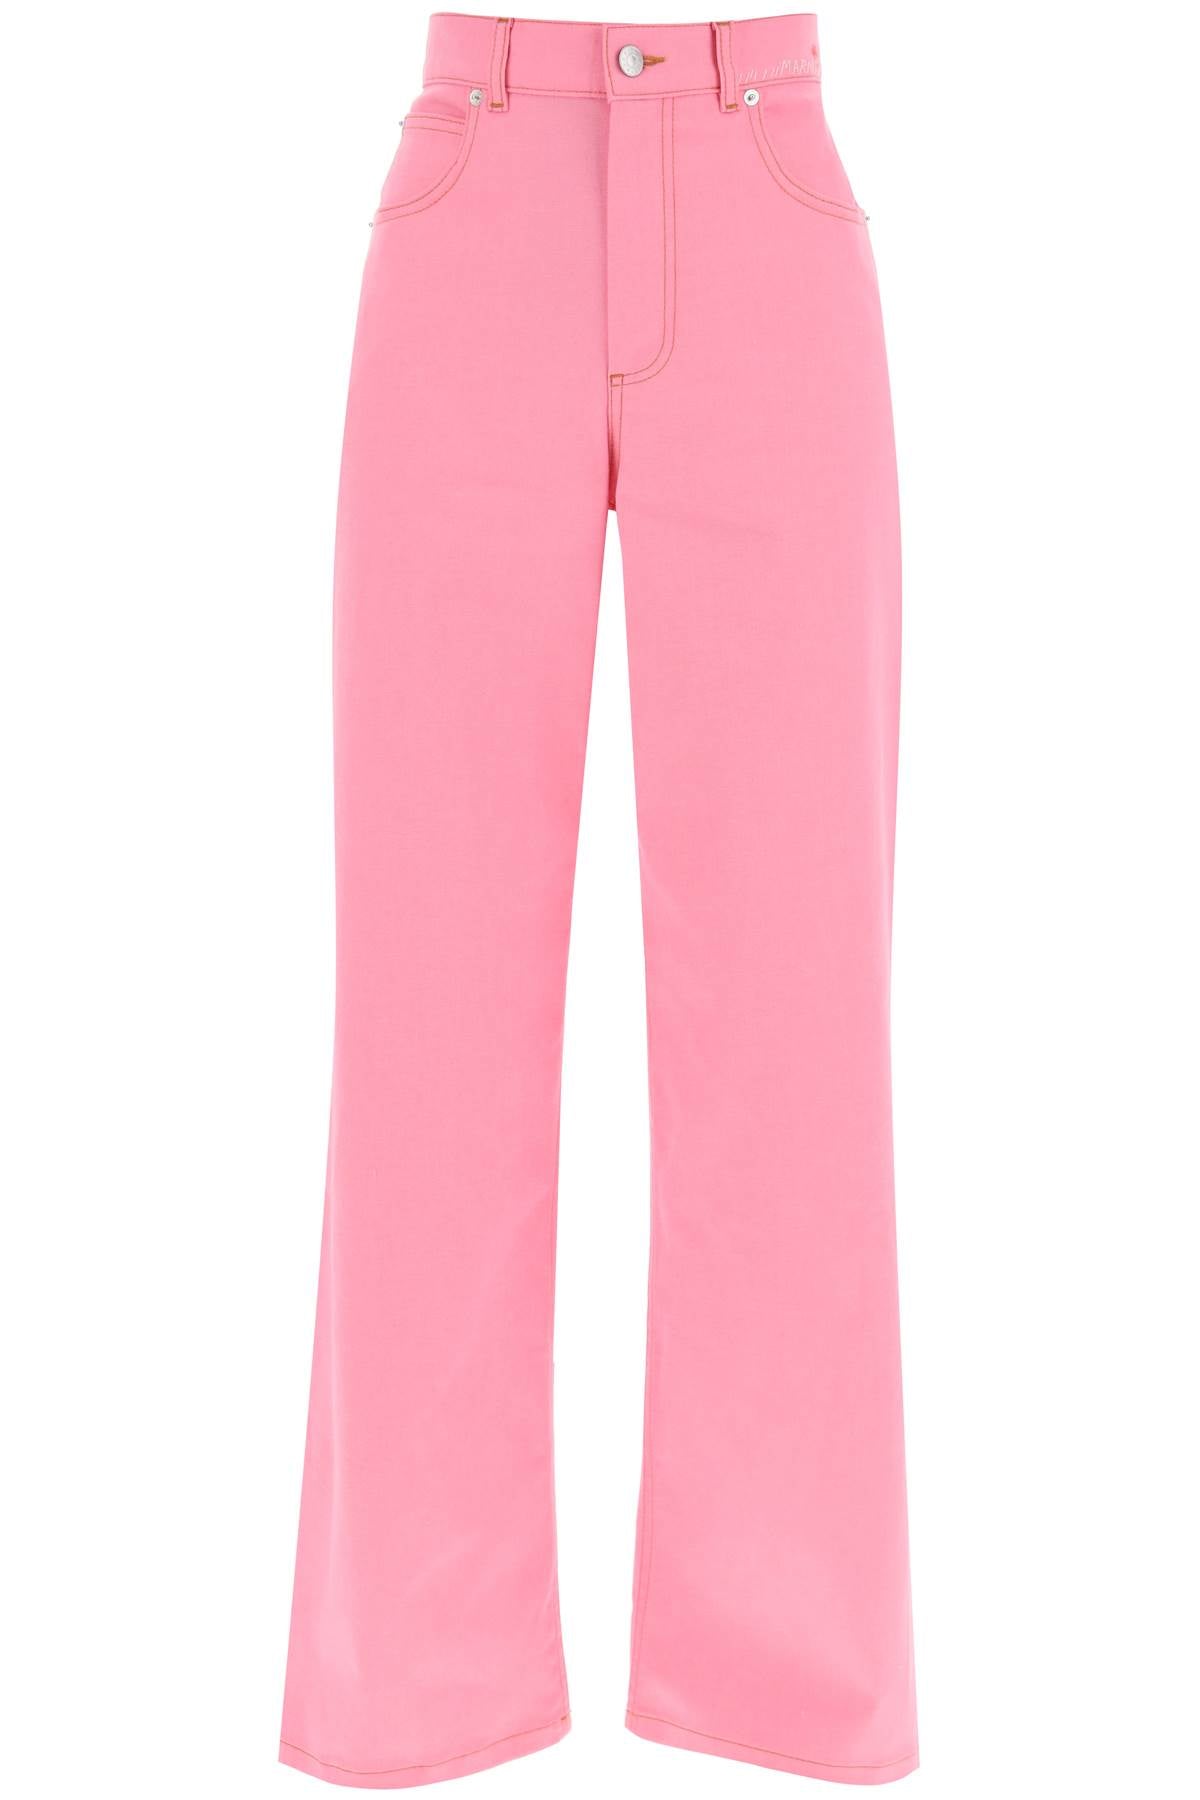 MARNI Lightweight Denim Jeans - Wide Leg Silhouette, Regular Waist, Pink